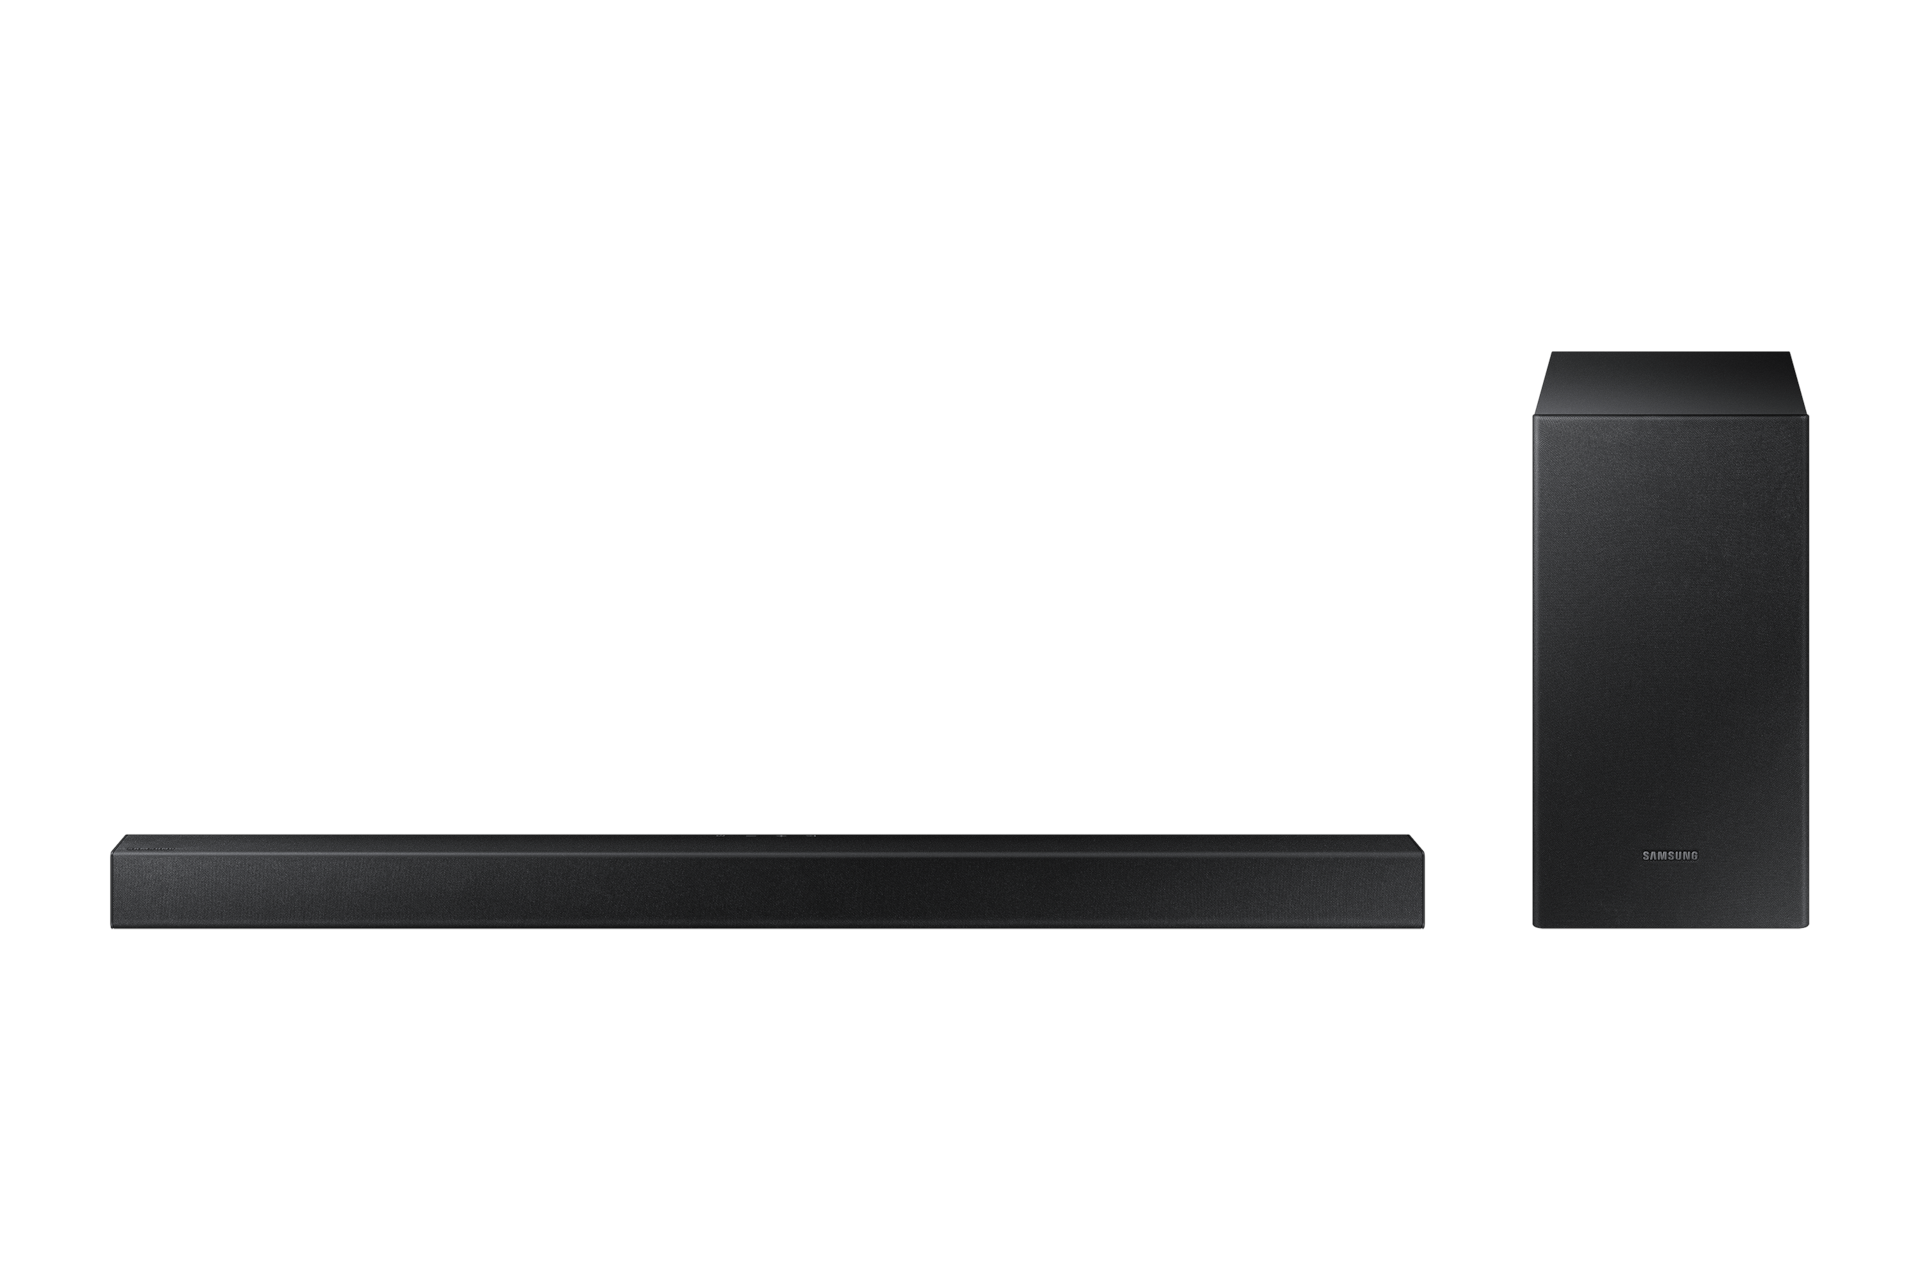 ซื้อ Samsung soundbar 2.1ch 150W ซาวด์บาร์ระบบเสียงแบบ 2.1 และซับวูฟเฟอร์ขนาด 6.5 นิ้ว ให้เสียงที่เต็มอิ่มกว่าเดิม พร้อมเสียงเบสลุ่มลึก. ด้านหน้าของ Samsung Soundbar HW-T420 สี Black